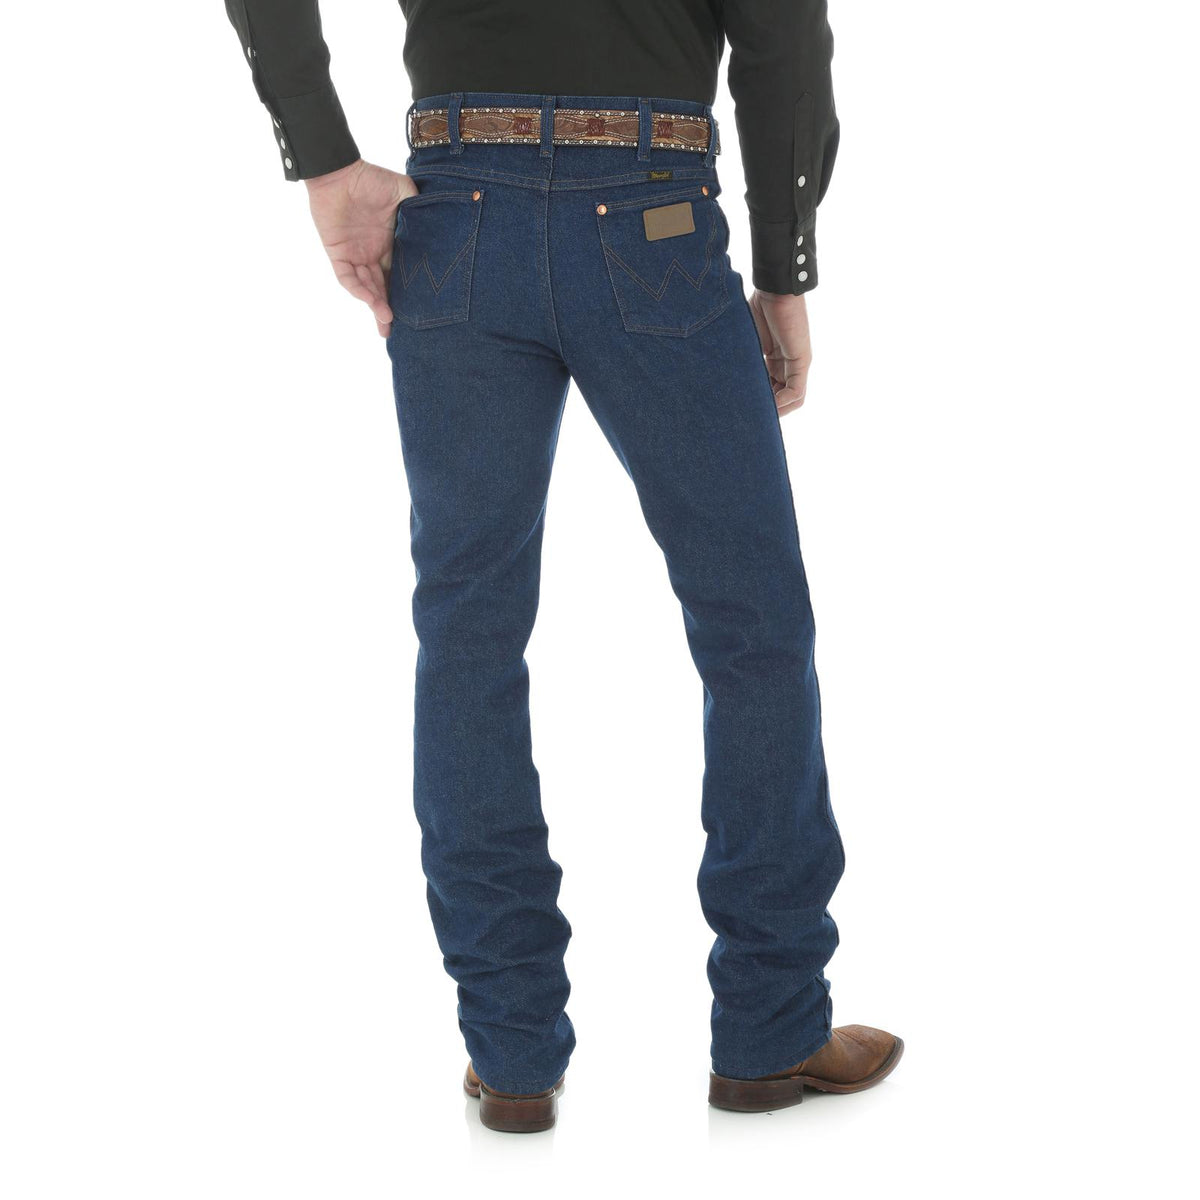 Wrangler Men's Cowboy Cut Slim Fit Jean in Prewash Indigo